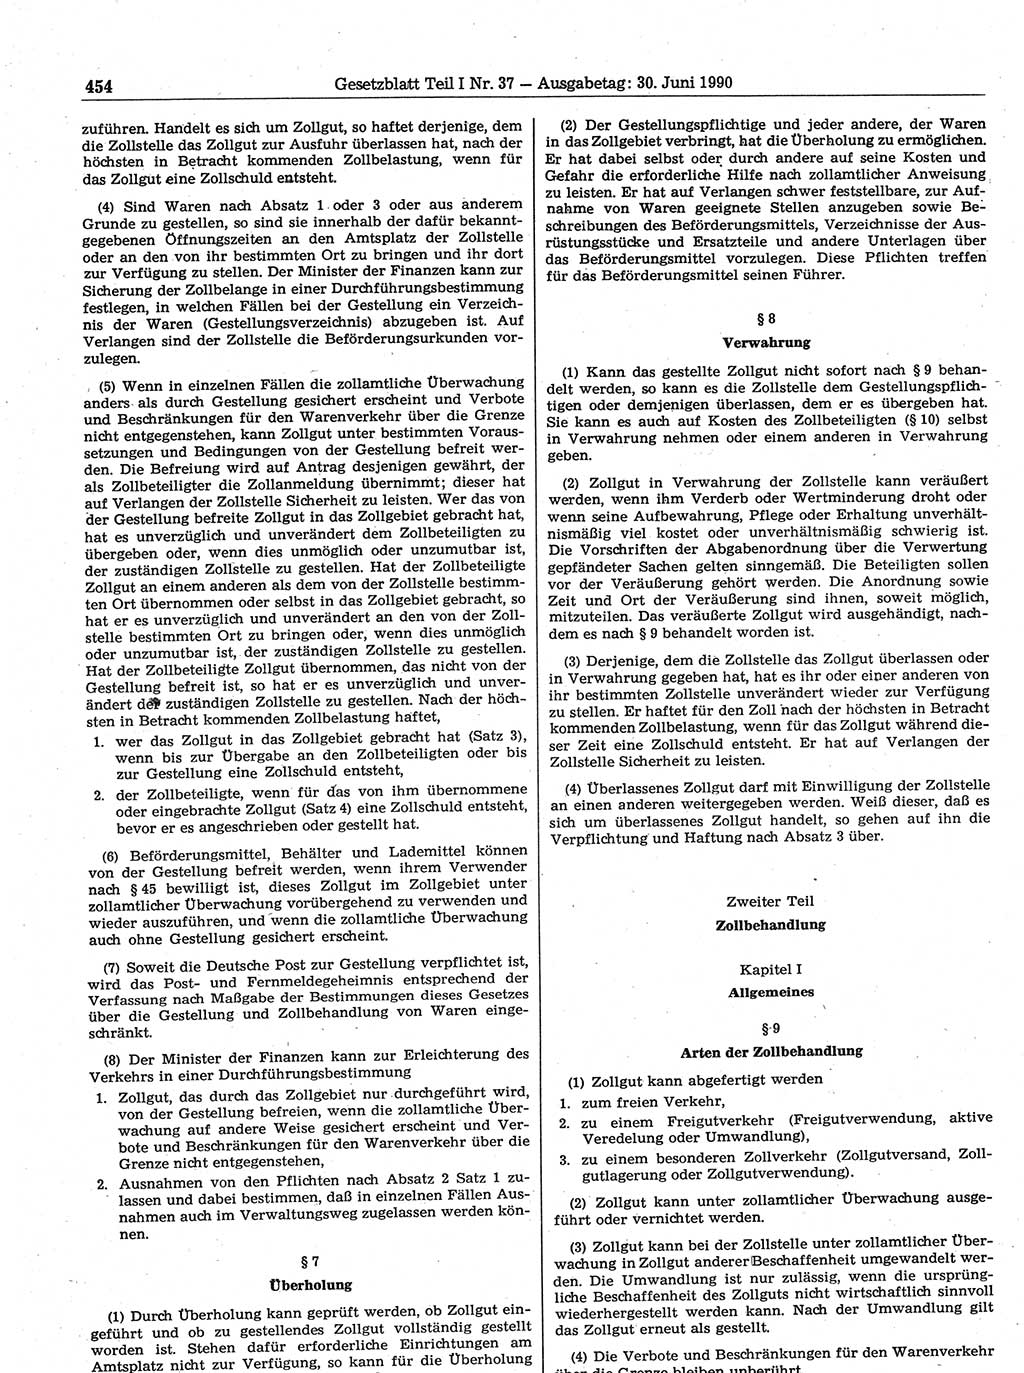 Gesetzblatt (GBl.) der Deutschen Demokratischen Republik (DDR) Teil Ⅰ 1990, Seite 454 (GBl. DDR Ⅰ 1990, S. 454)